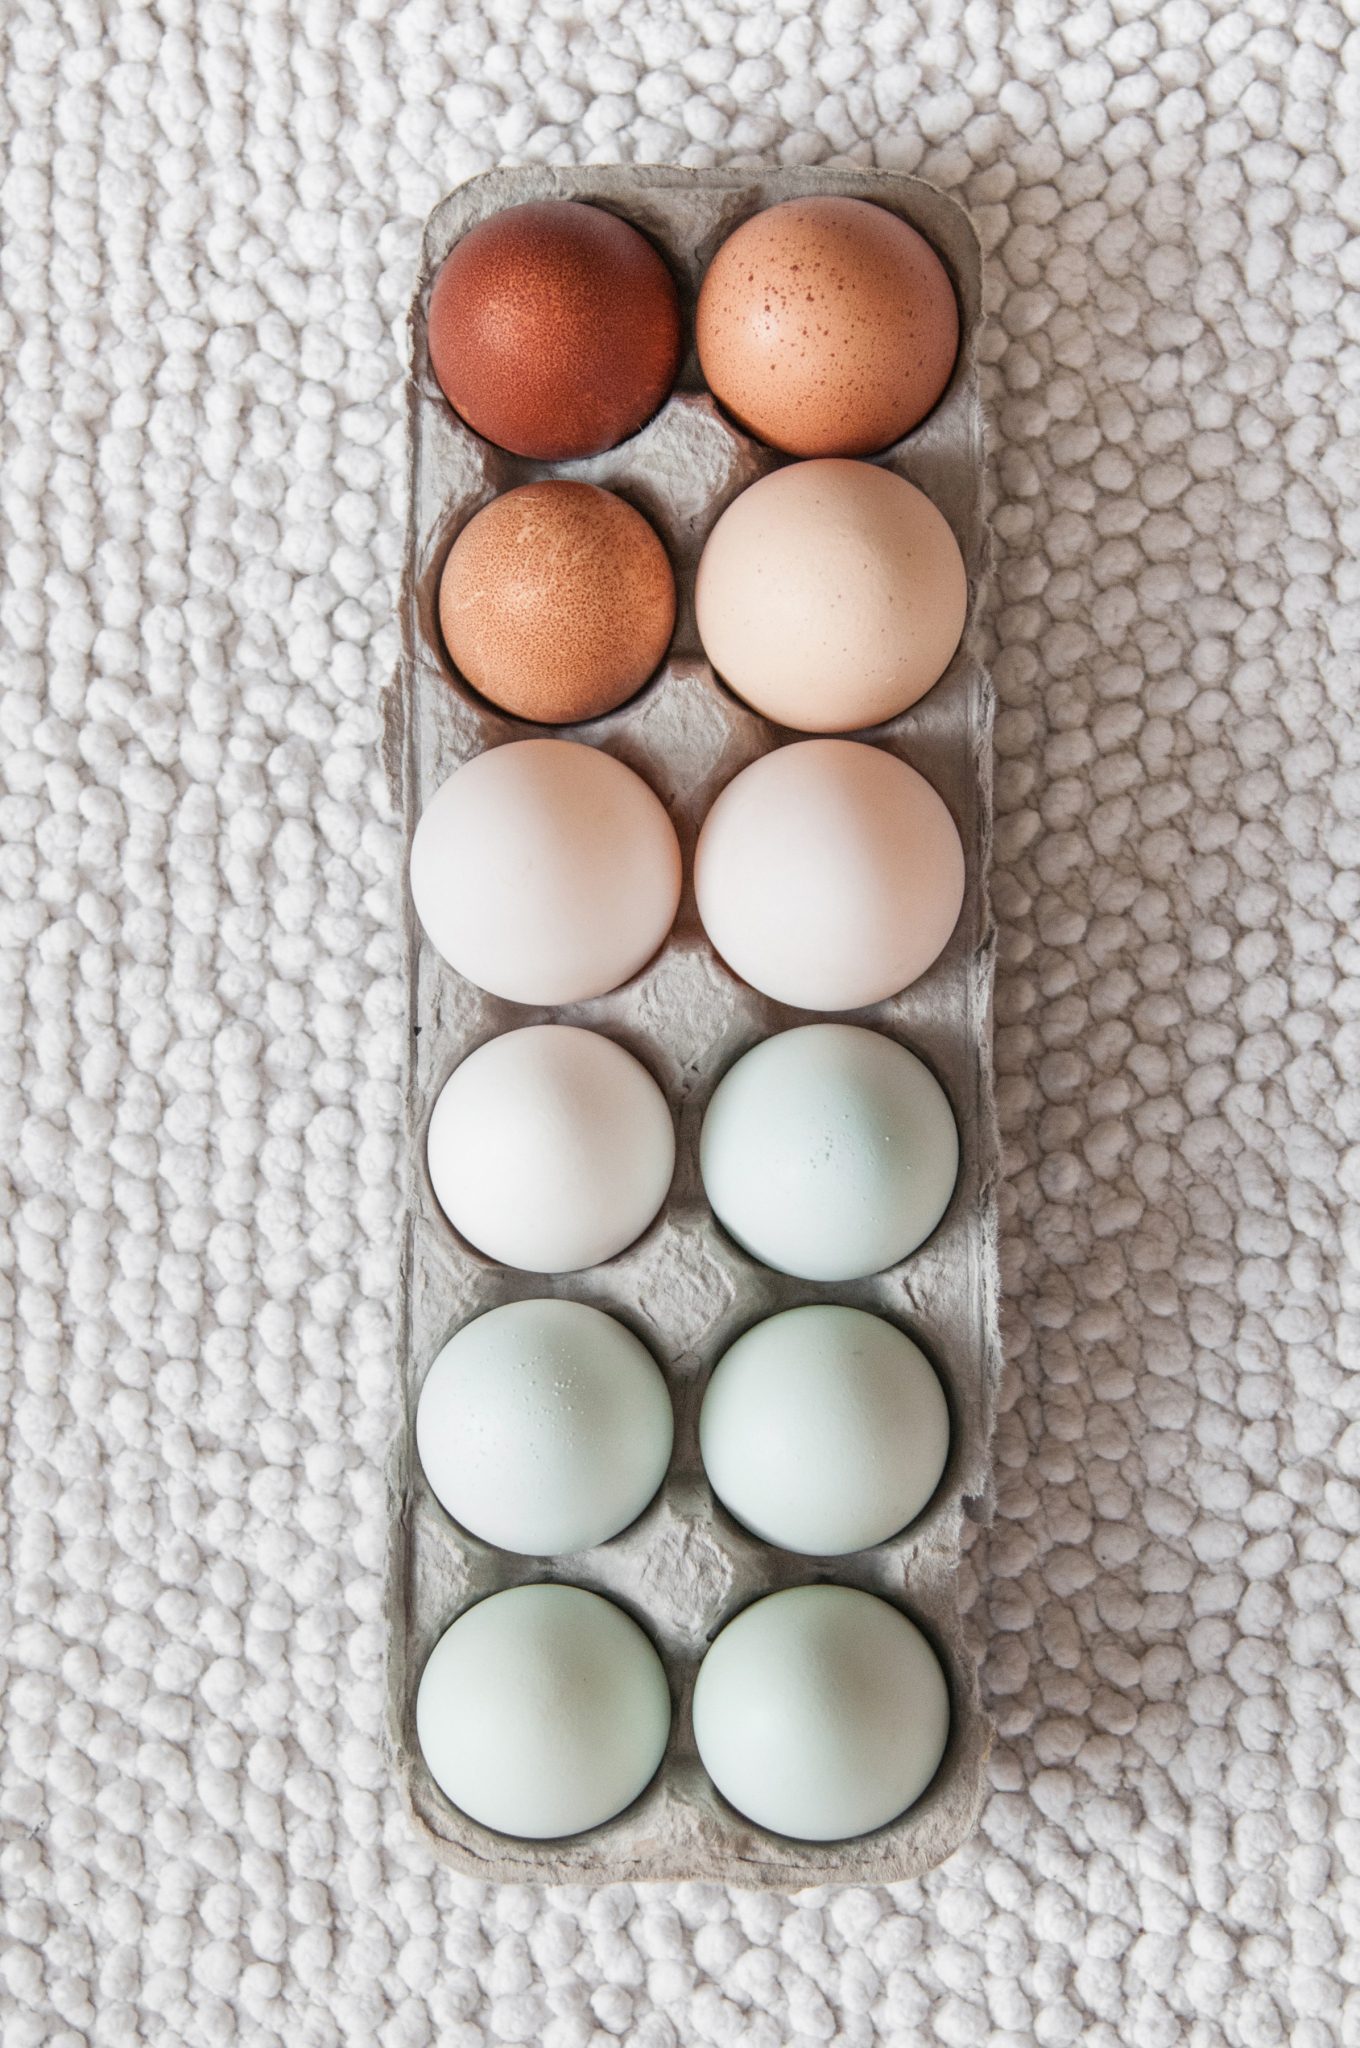 health claims on egg cartons